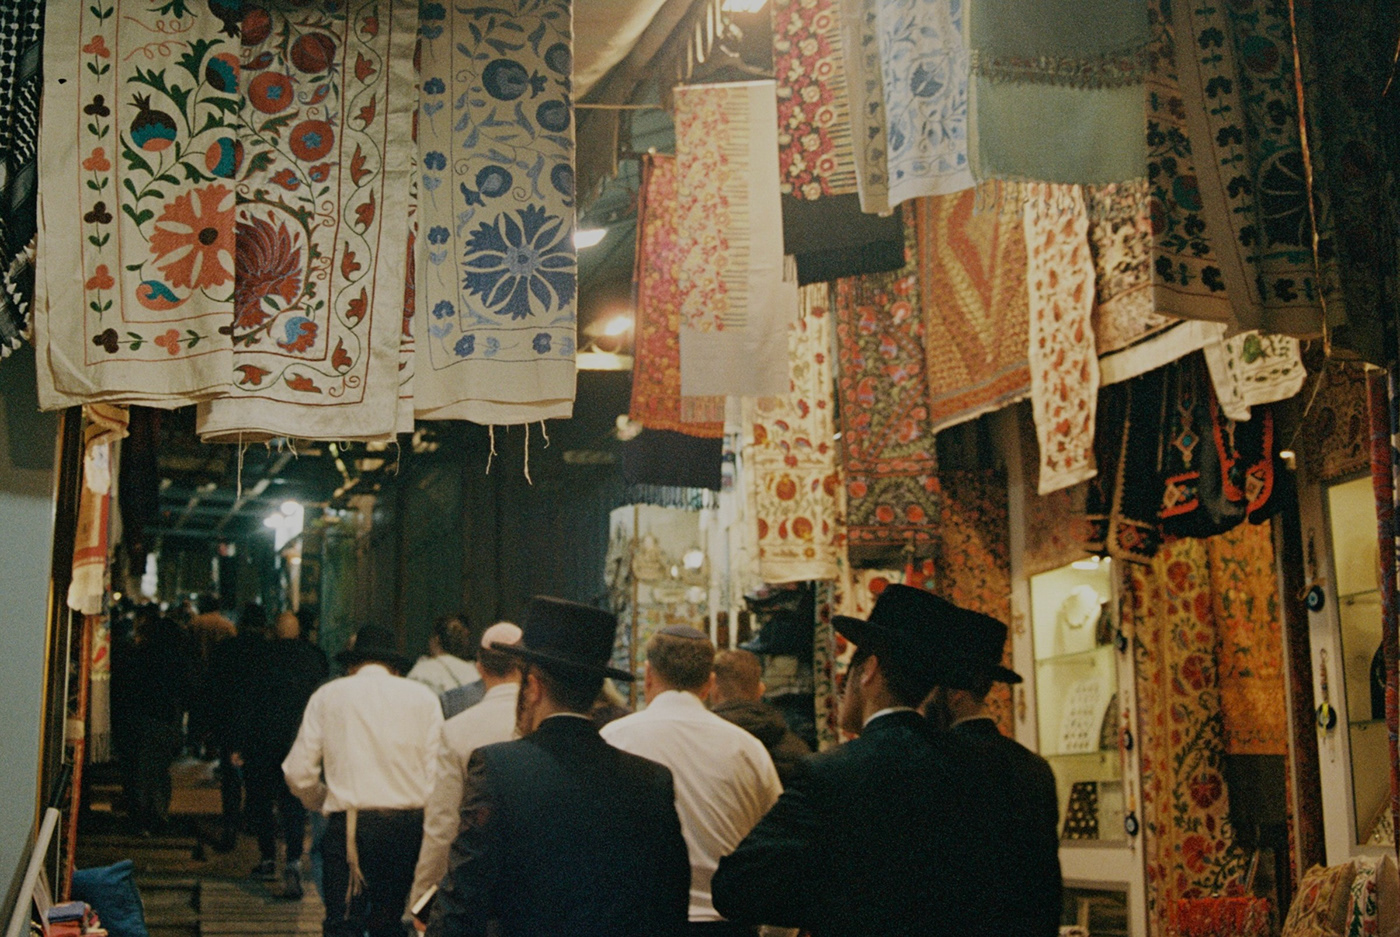 israel palestine jerusalem telaviv  bethlehem 35mm analog film photography kodak analog photography